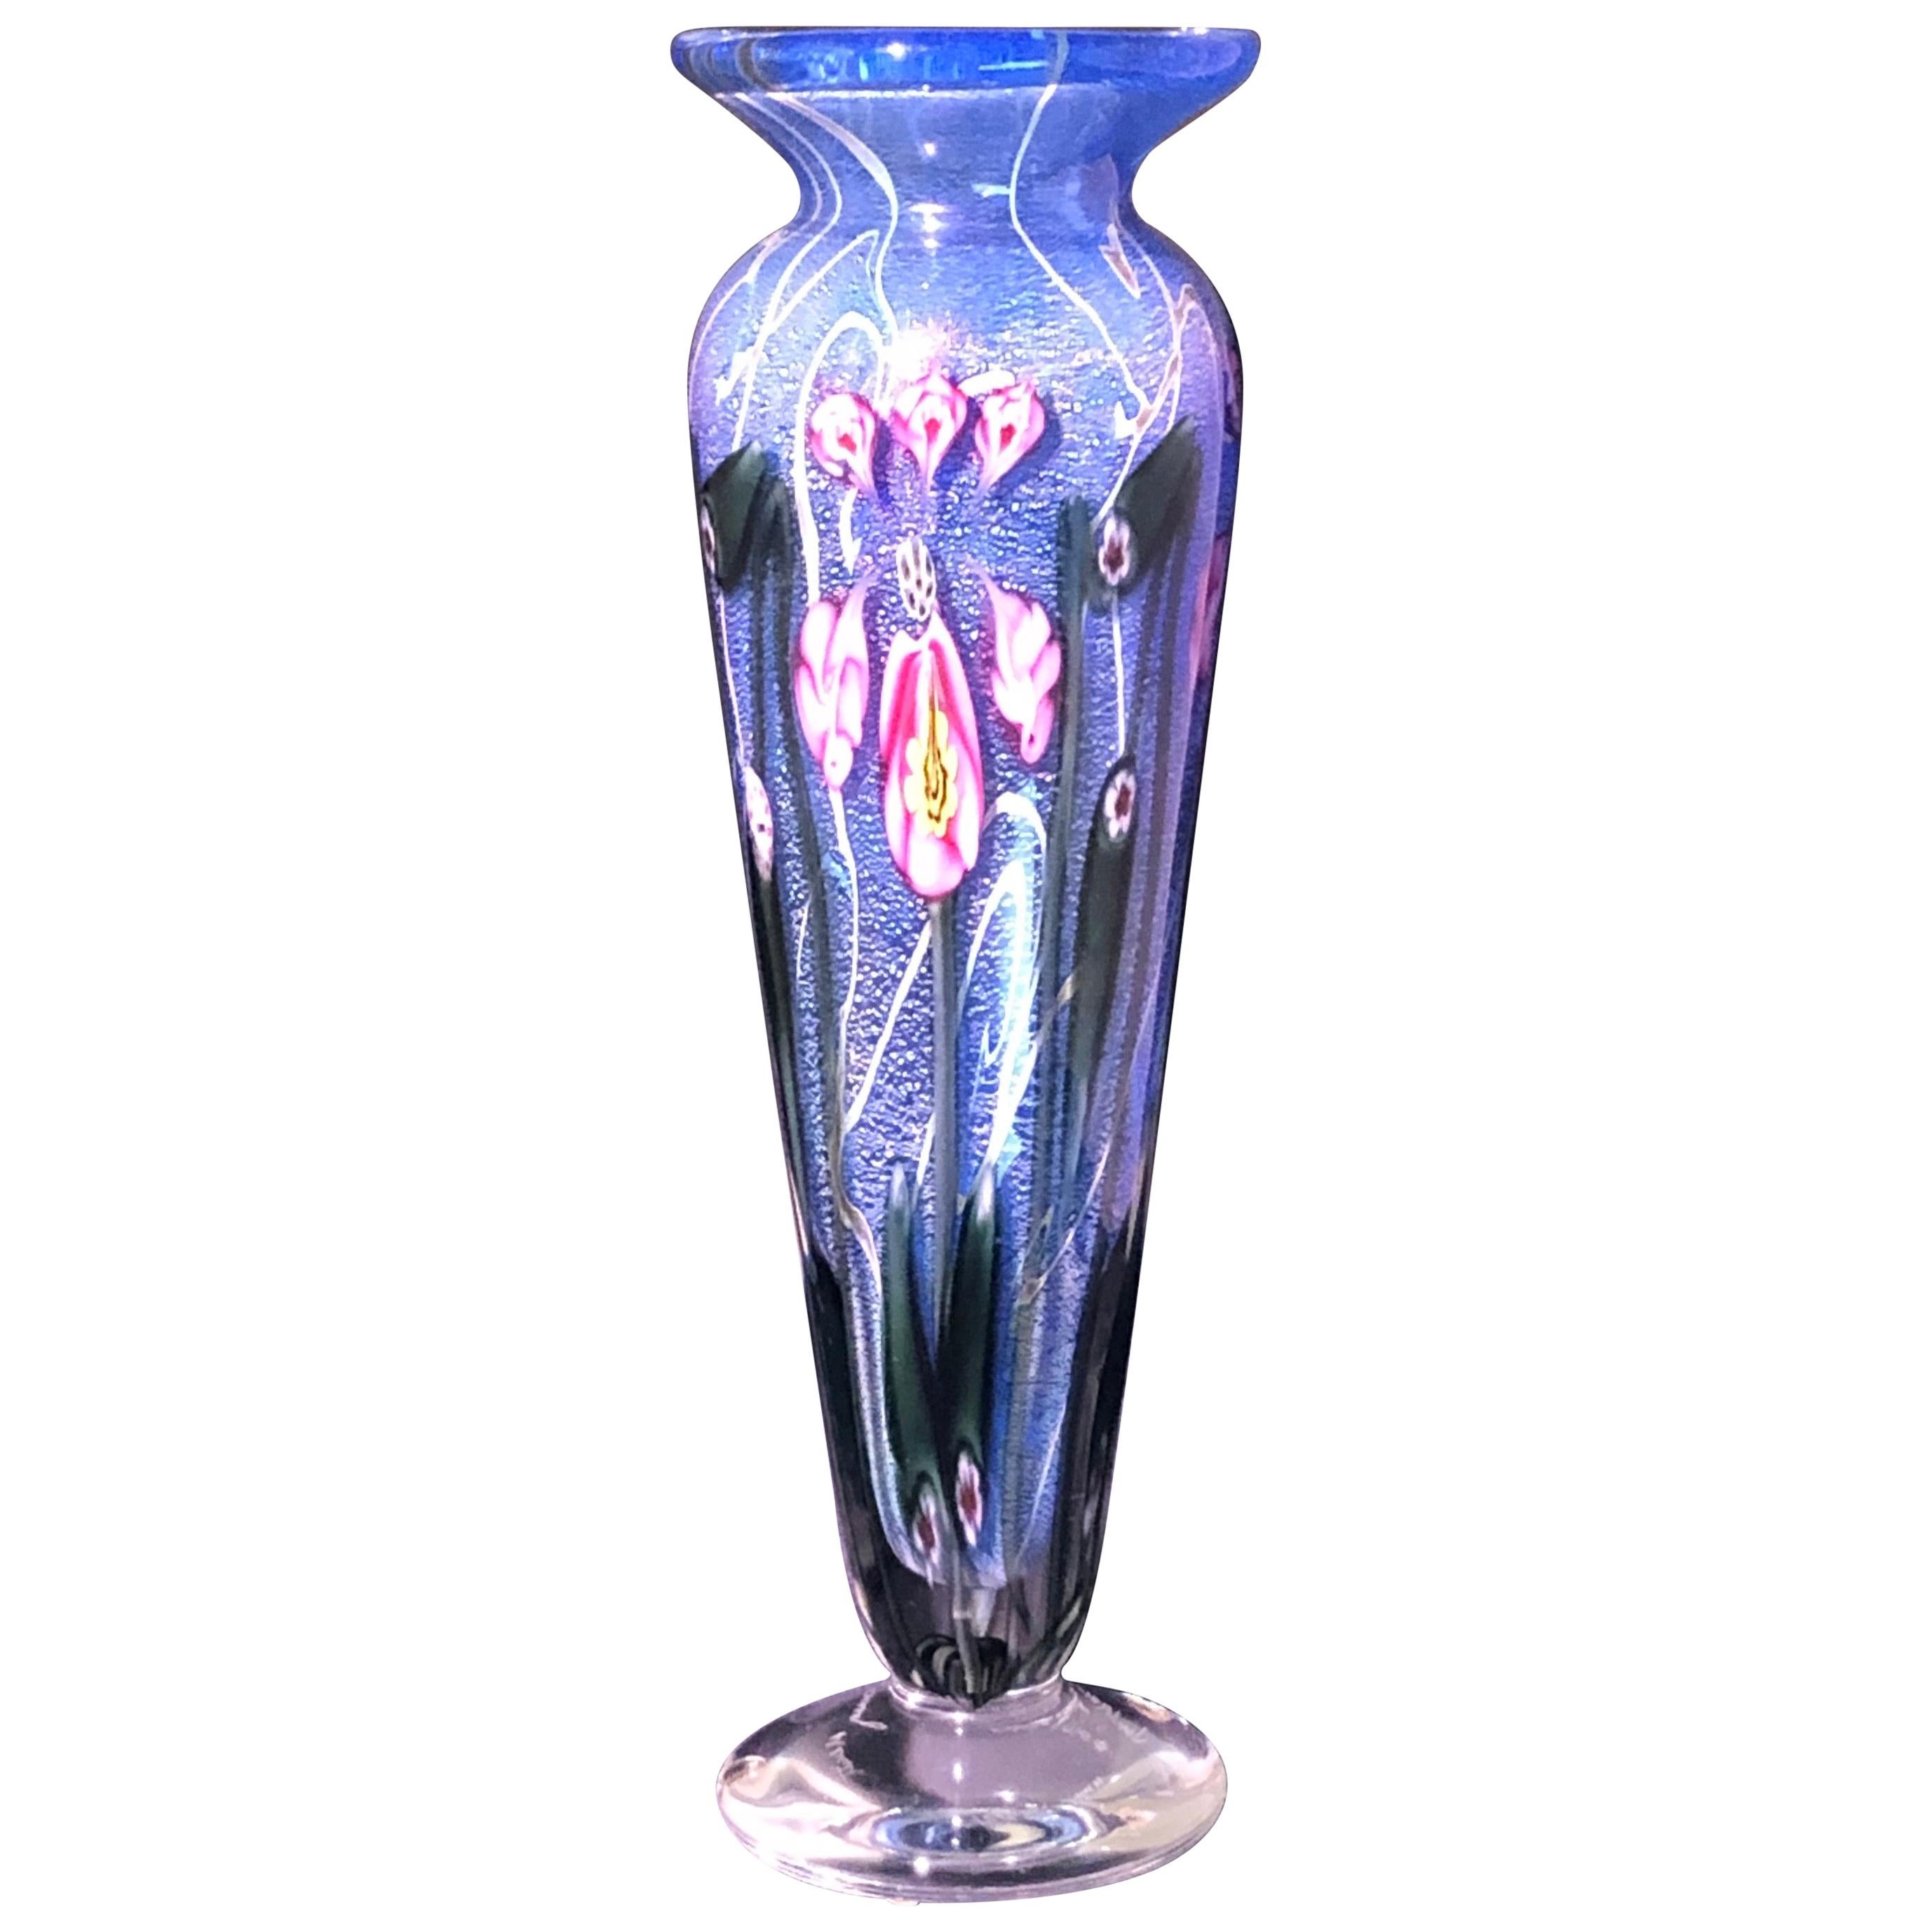 Vandermark Art Glass Vase Signed by Vandermark, Doug Merritt and Stephen Smarr